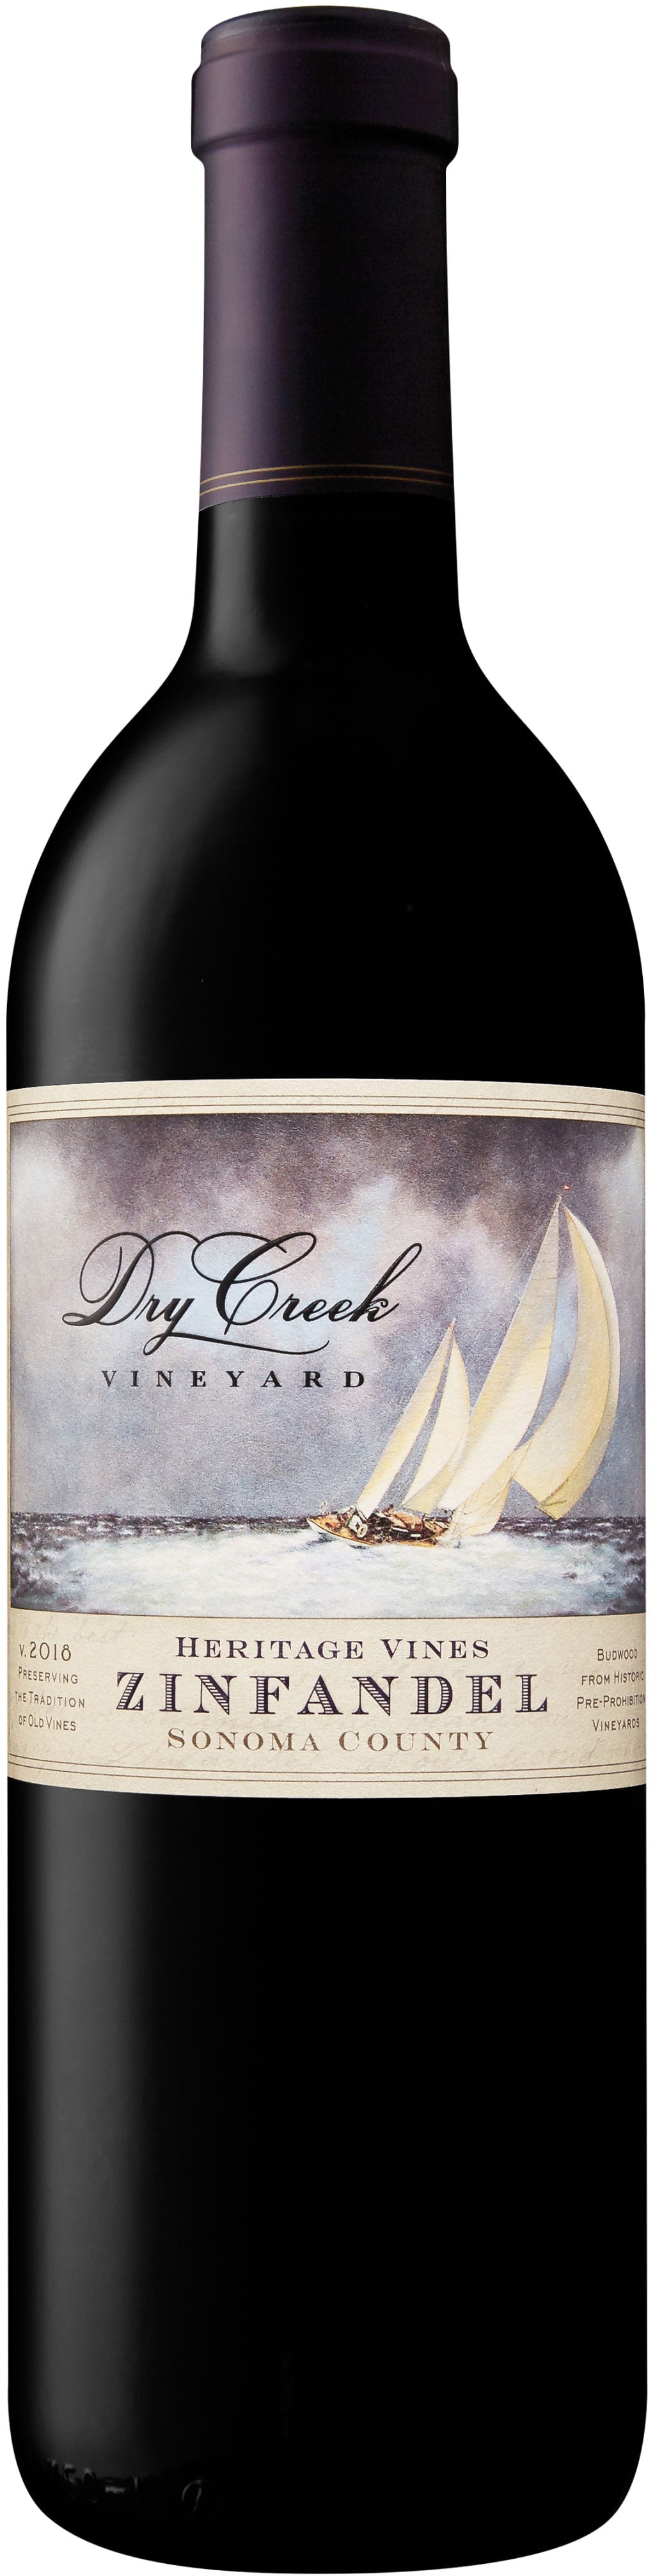 Dry Creek Vineyard Zinfandel Heritage Vines 2018